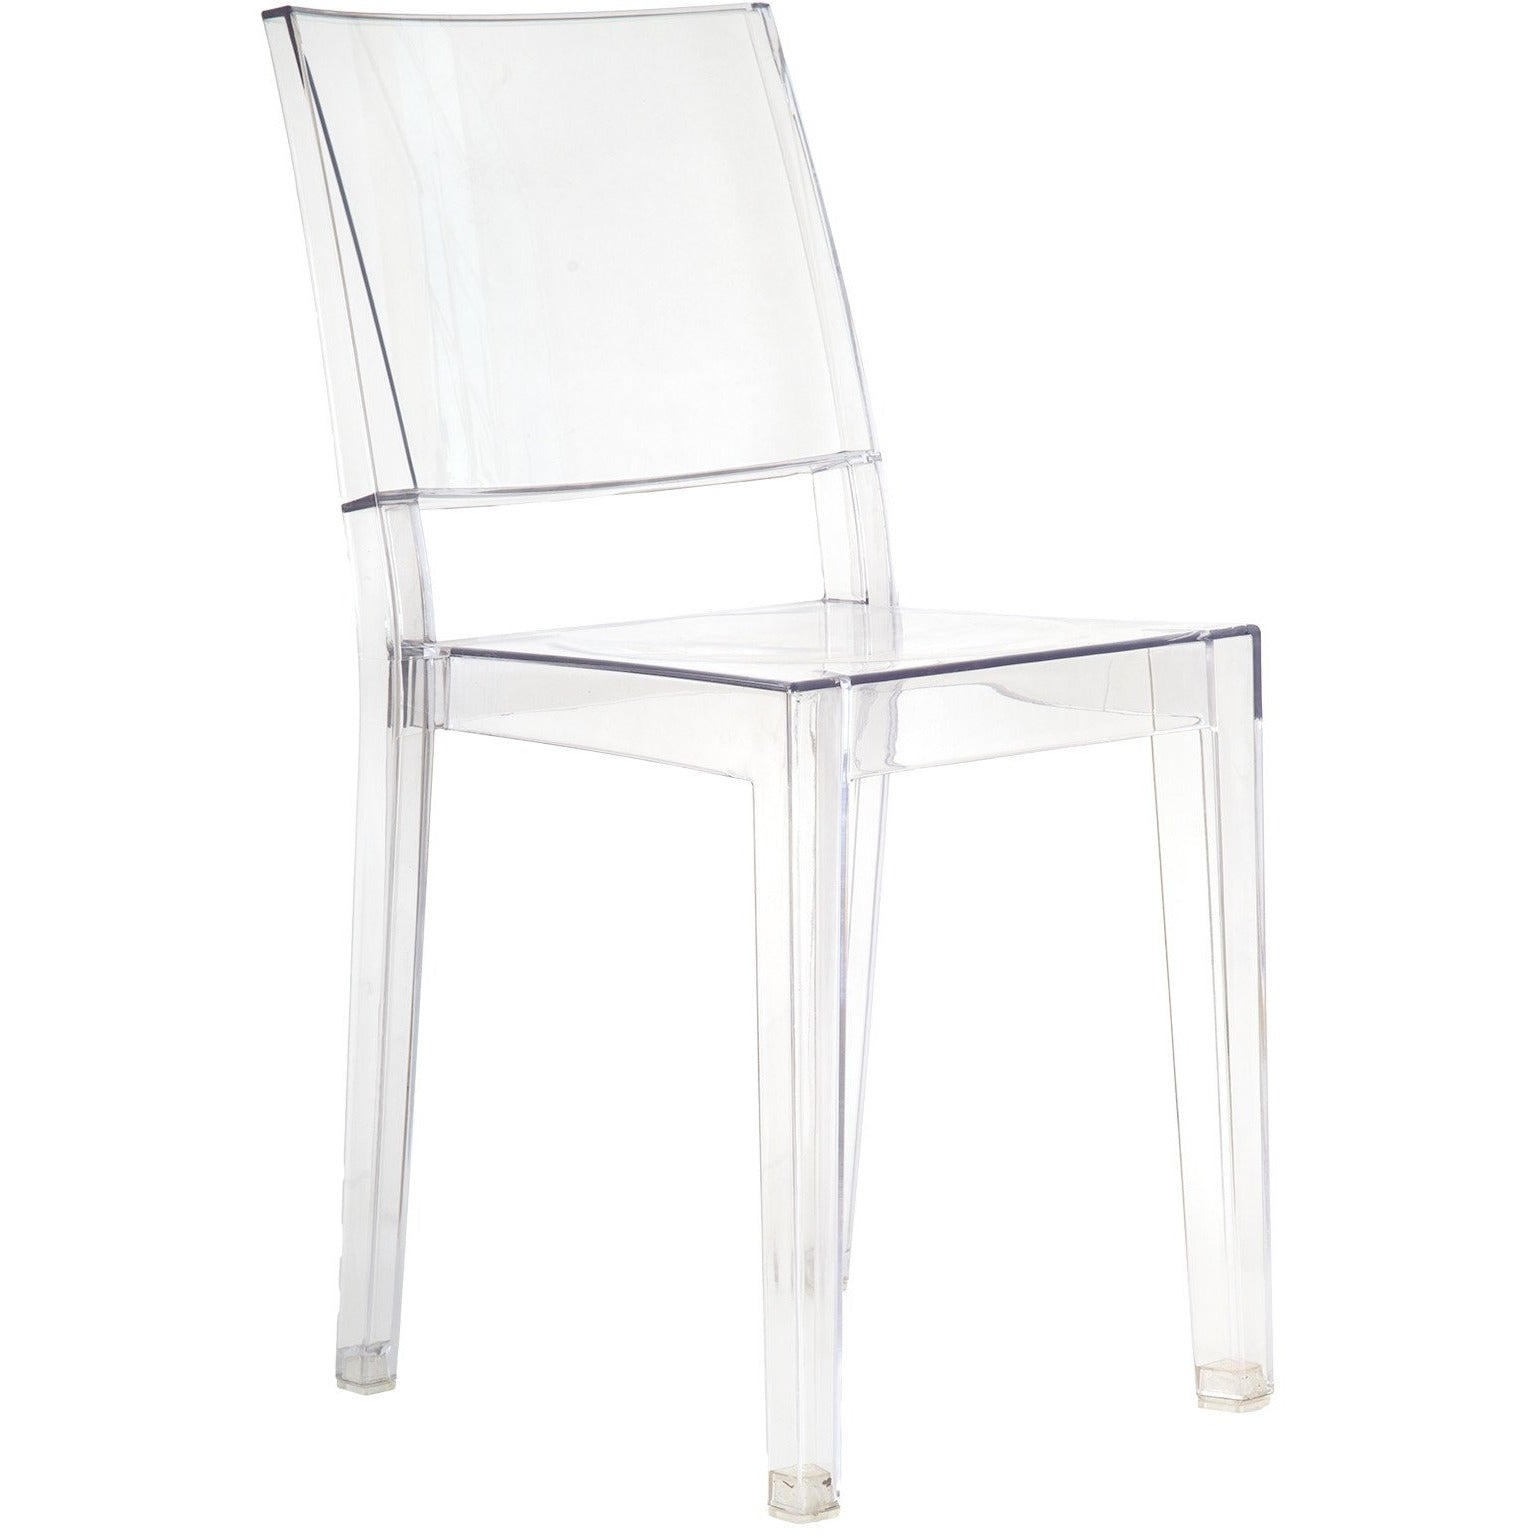 Lanna Furniture Pang Square Chair-Minimal & Modern